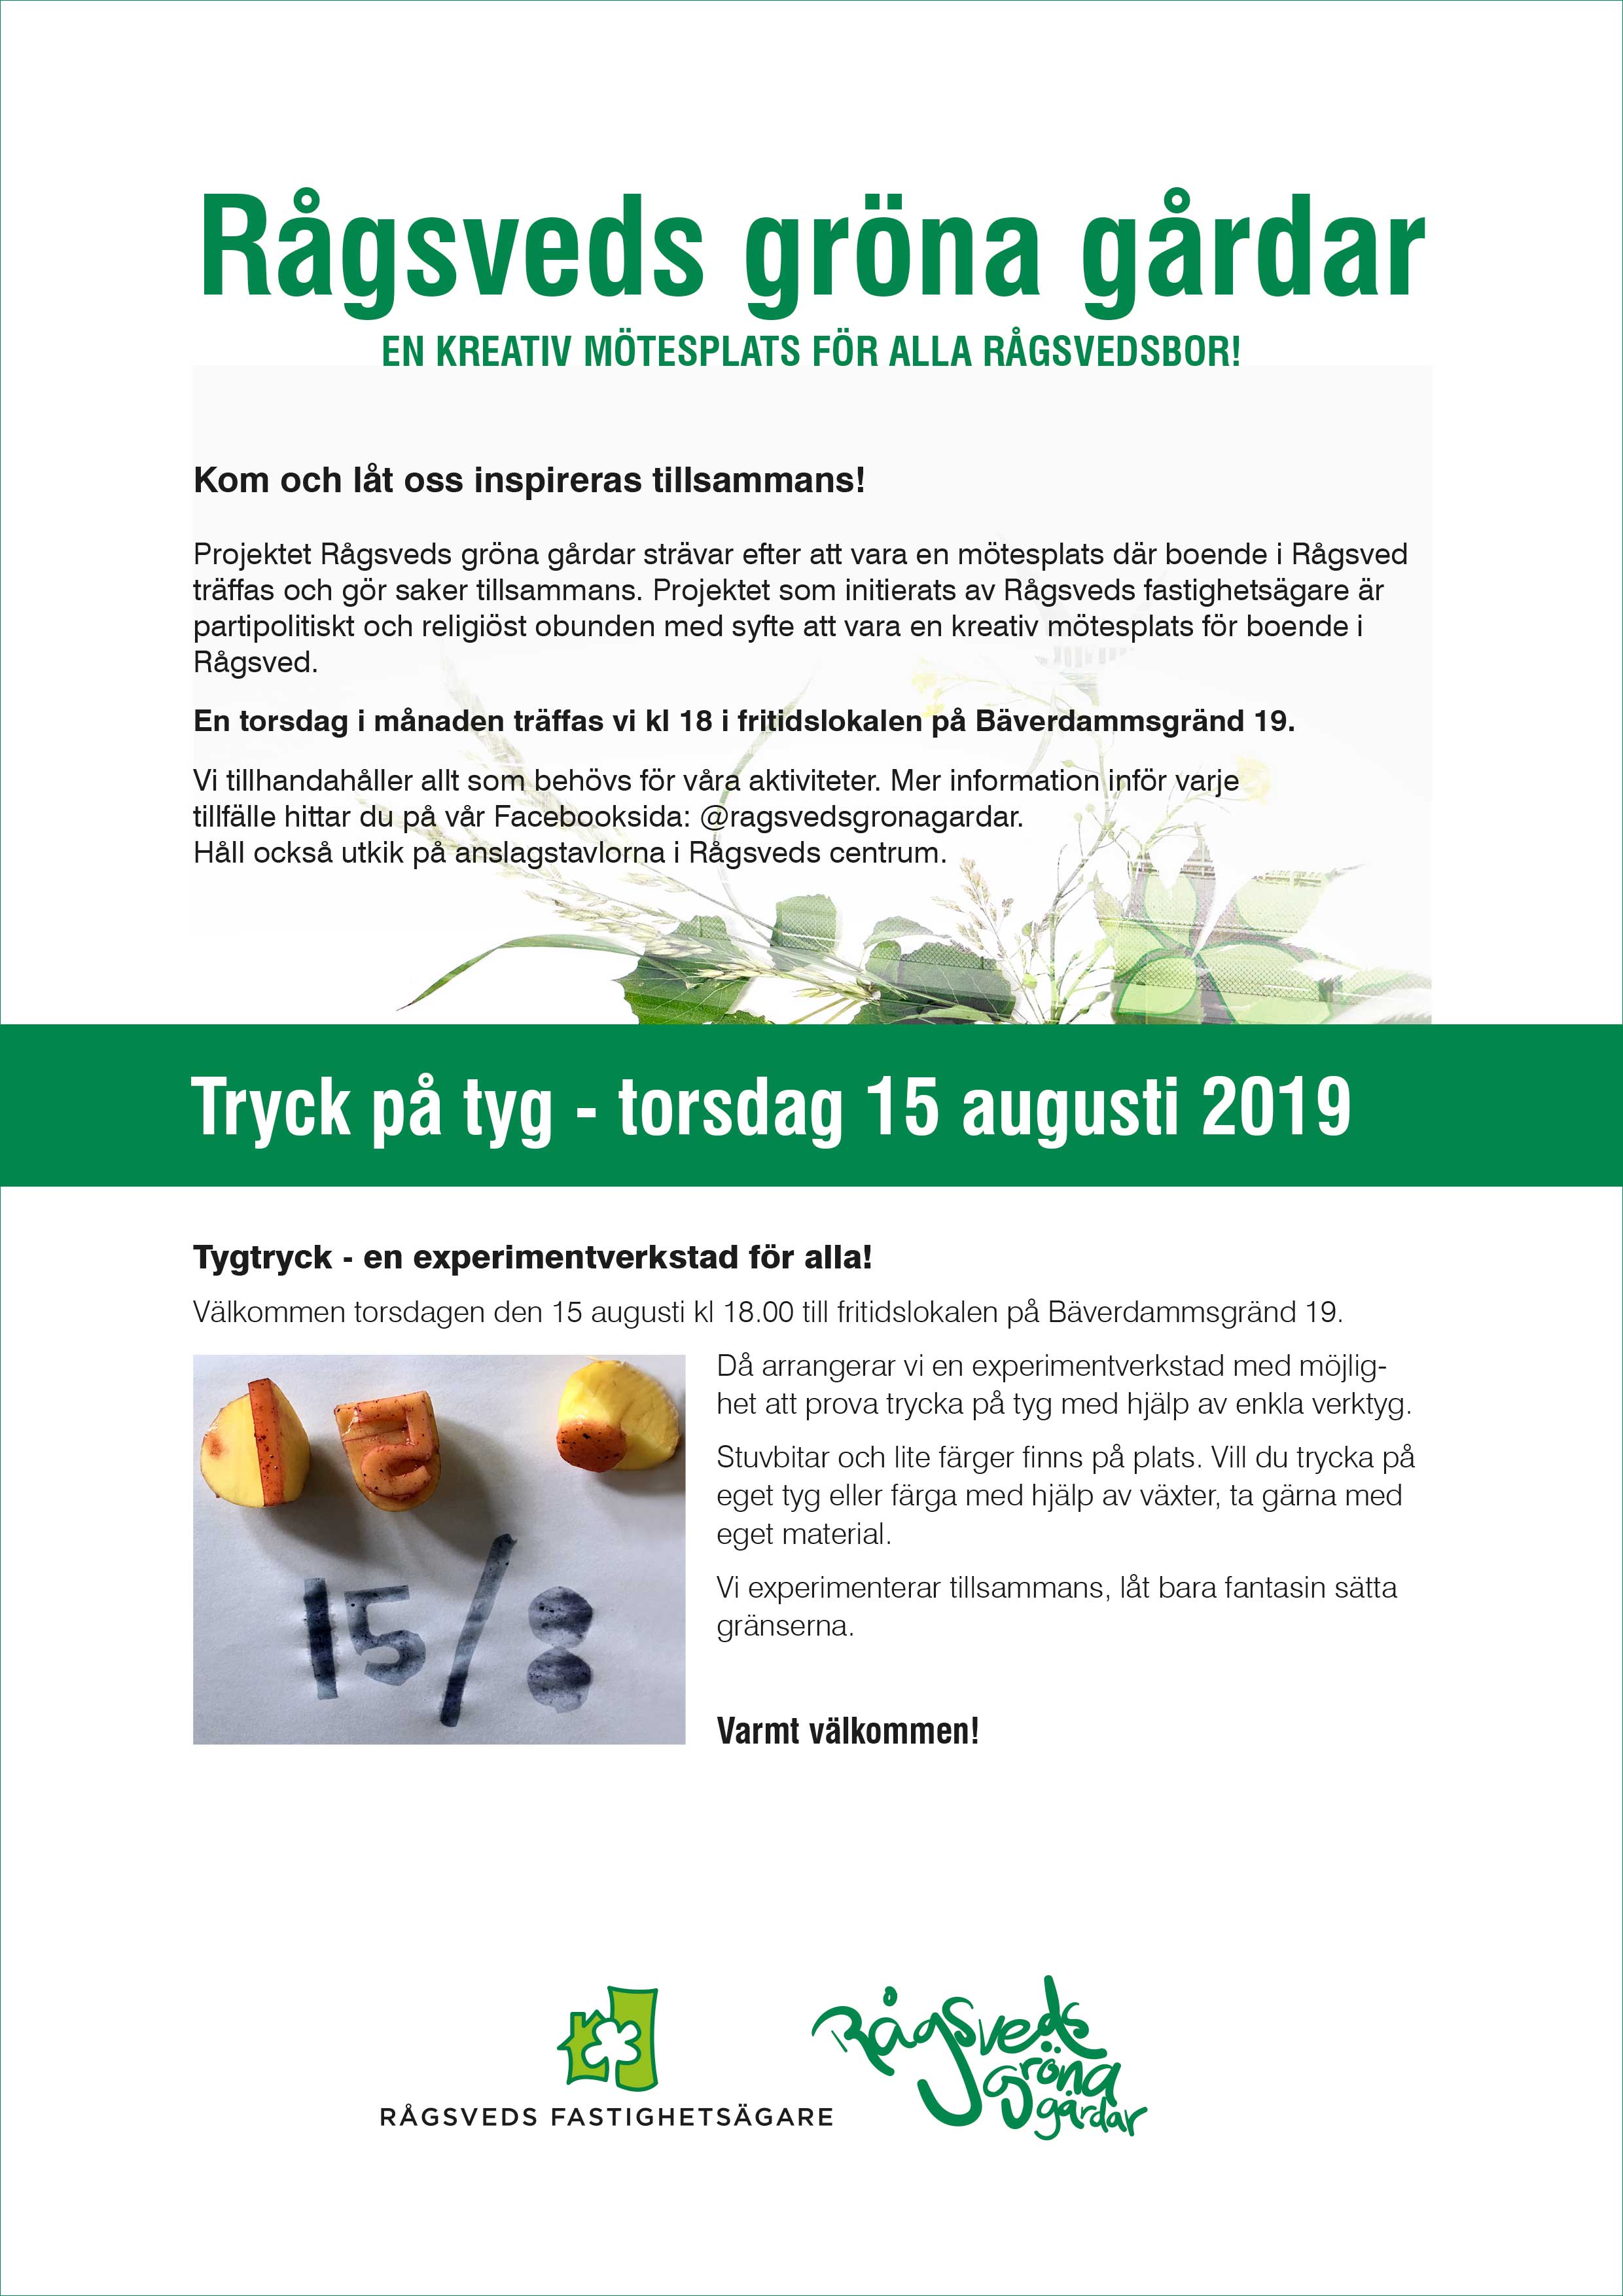 Rågsveds Gröna Gårdar: Tryck på tyg 15 augusti 2019